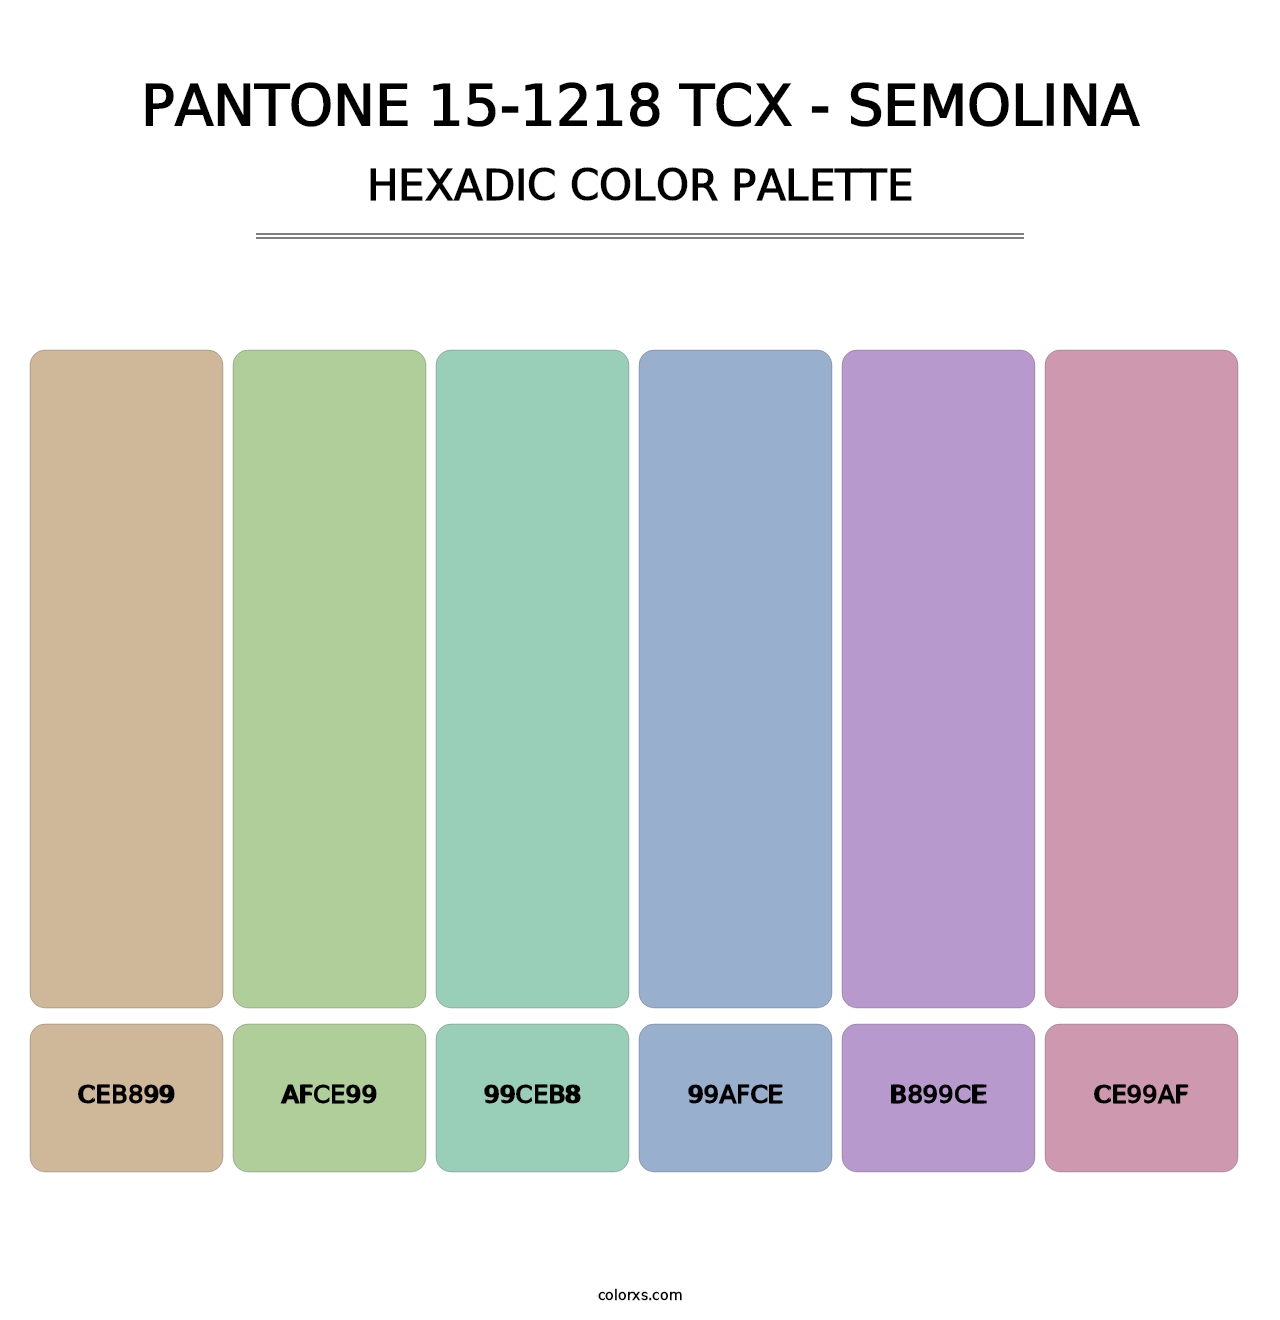 PANTONE 15-1218 TCX - Semolina - Hexadic Color Palette